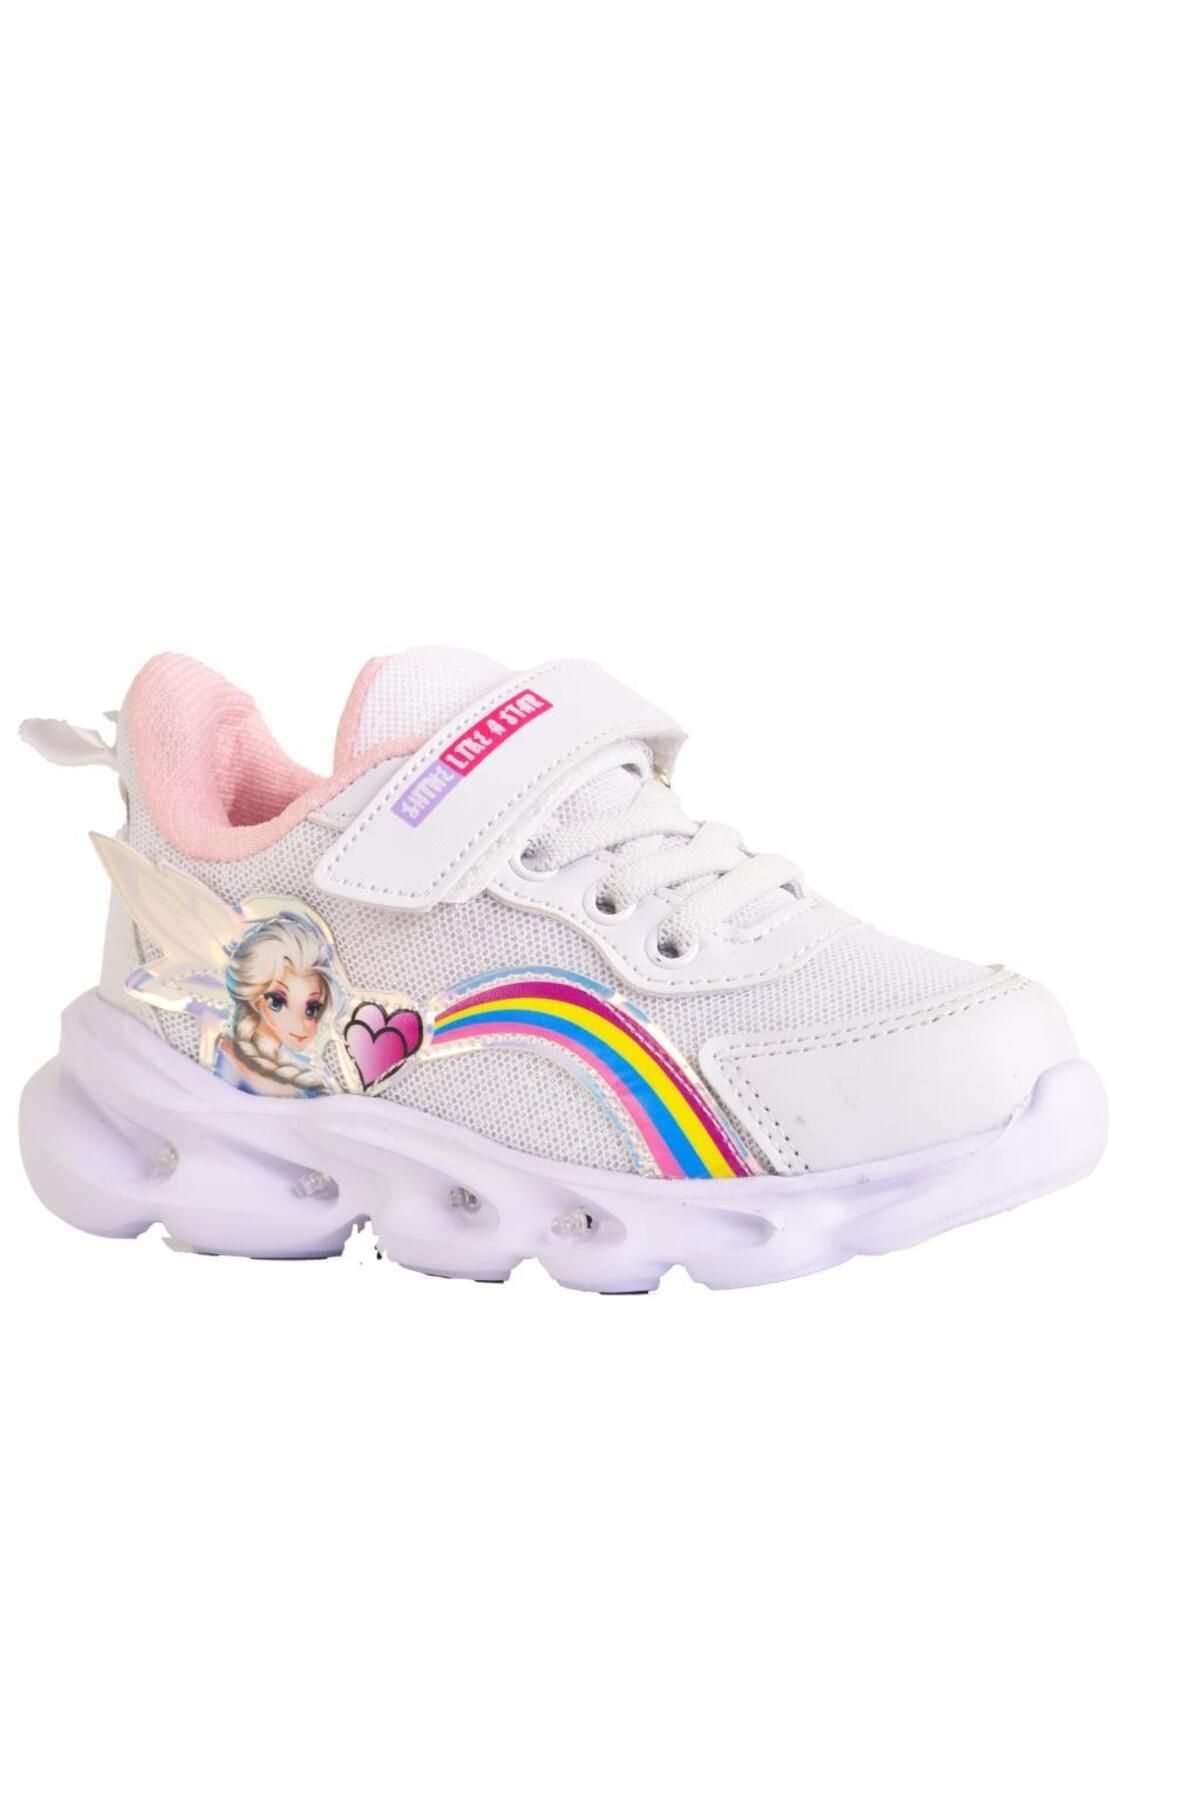 ellaboni Kız Çocuk Işıklı Pembe / Beyaz Prenses Spor Ayakkabı Sneaker